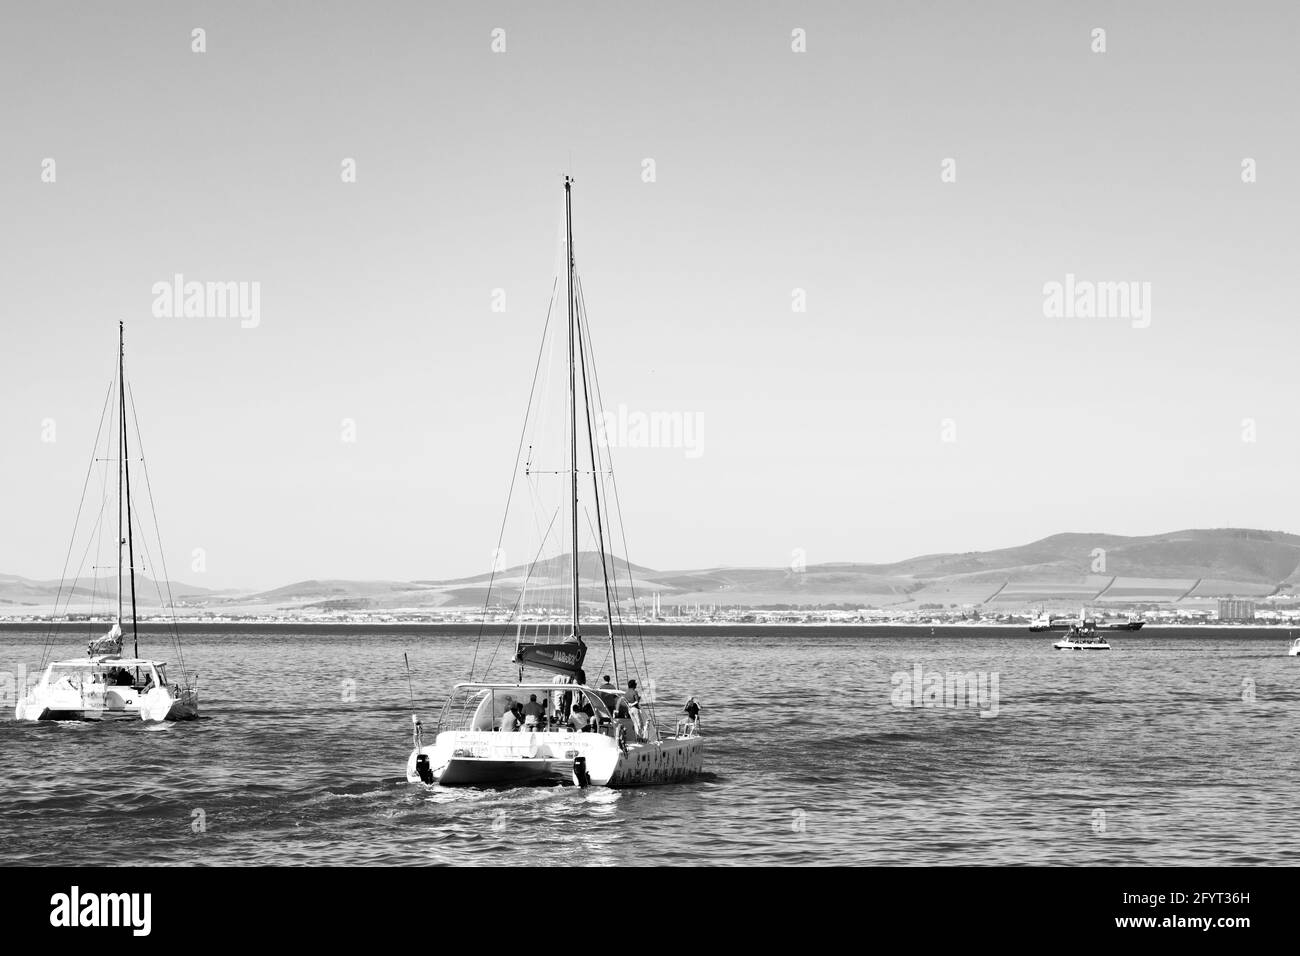 KAPSTADT, SÜDAFRIKA - 06. Jan 2021: Kapstadt, Südafrika - 13. Oktober 2019: Touristen, die auf einer Katamaran-Yacht vor dem Hafen von Cape Tow fahren Stockfoto